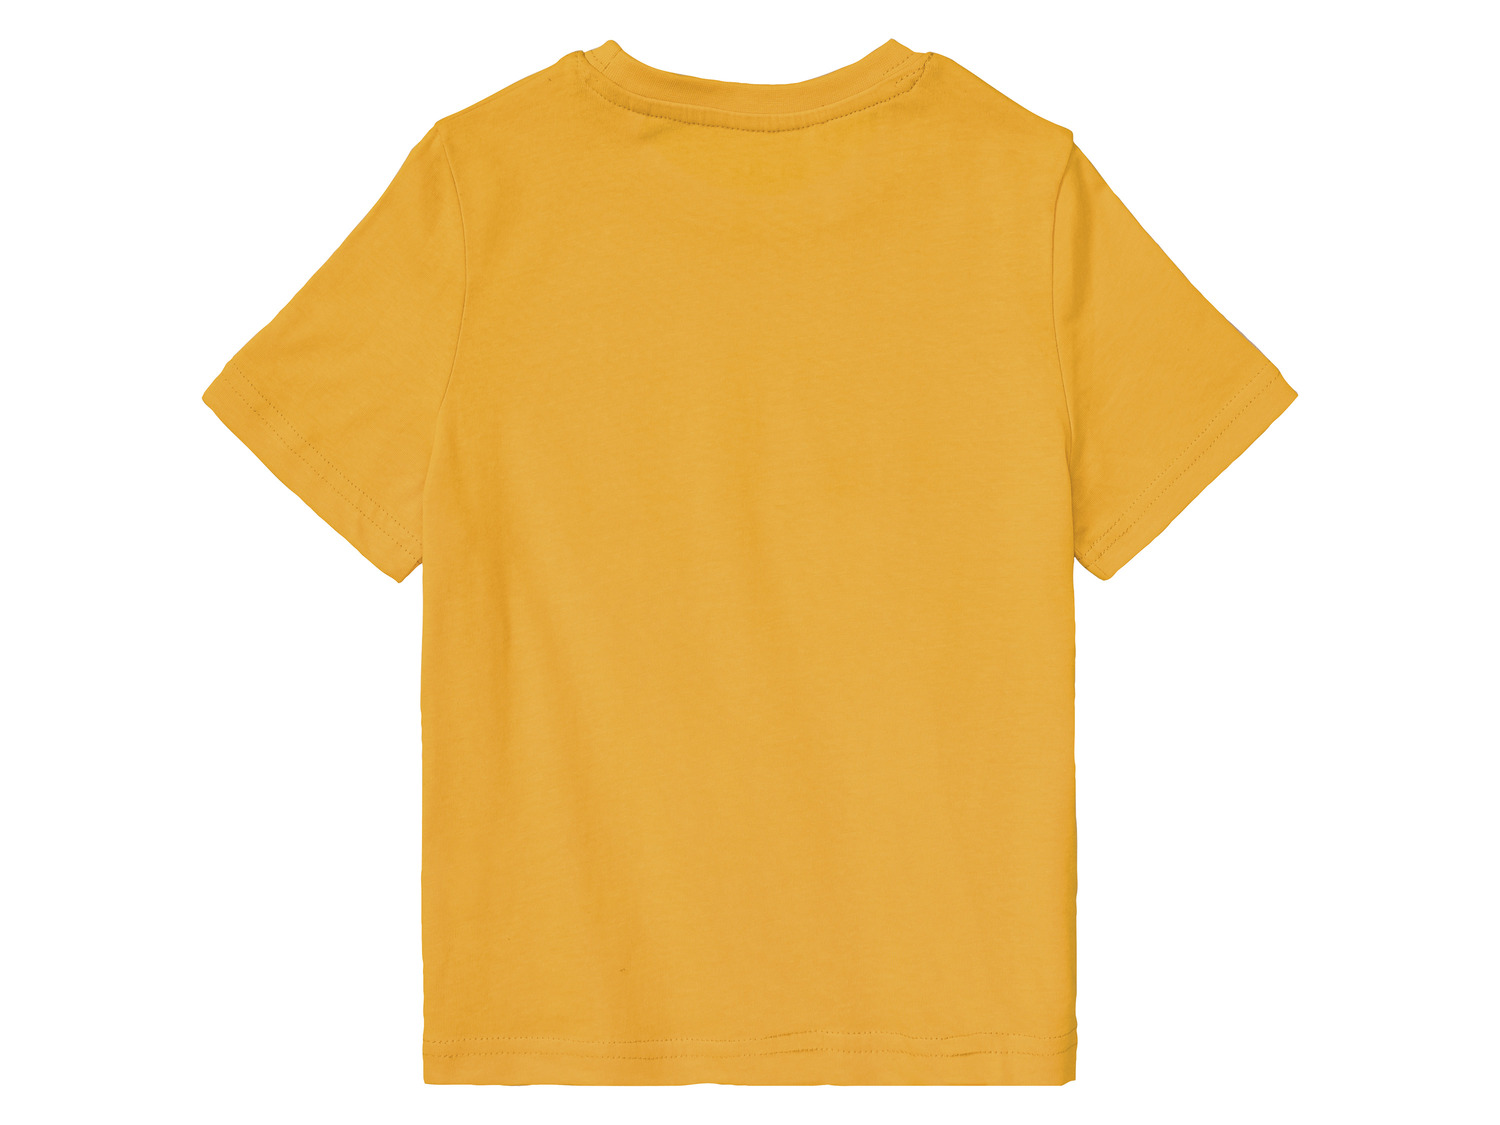 تی شرت دو عددی پسرانه 40626 سایز 3 تا 8 سال مارک LUPILU